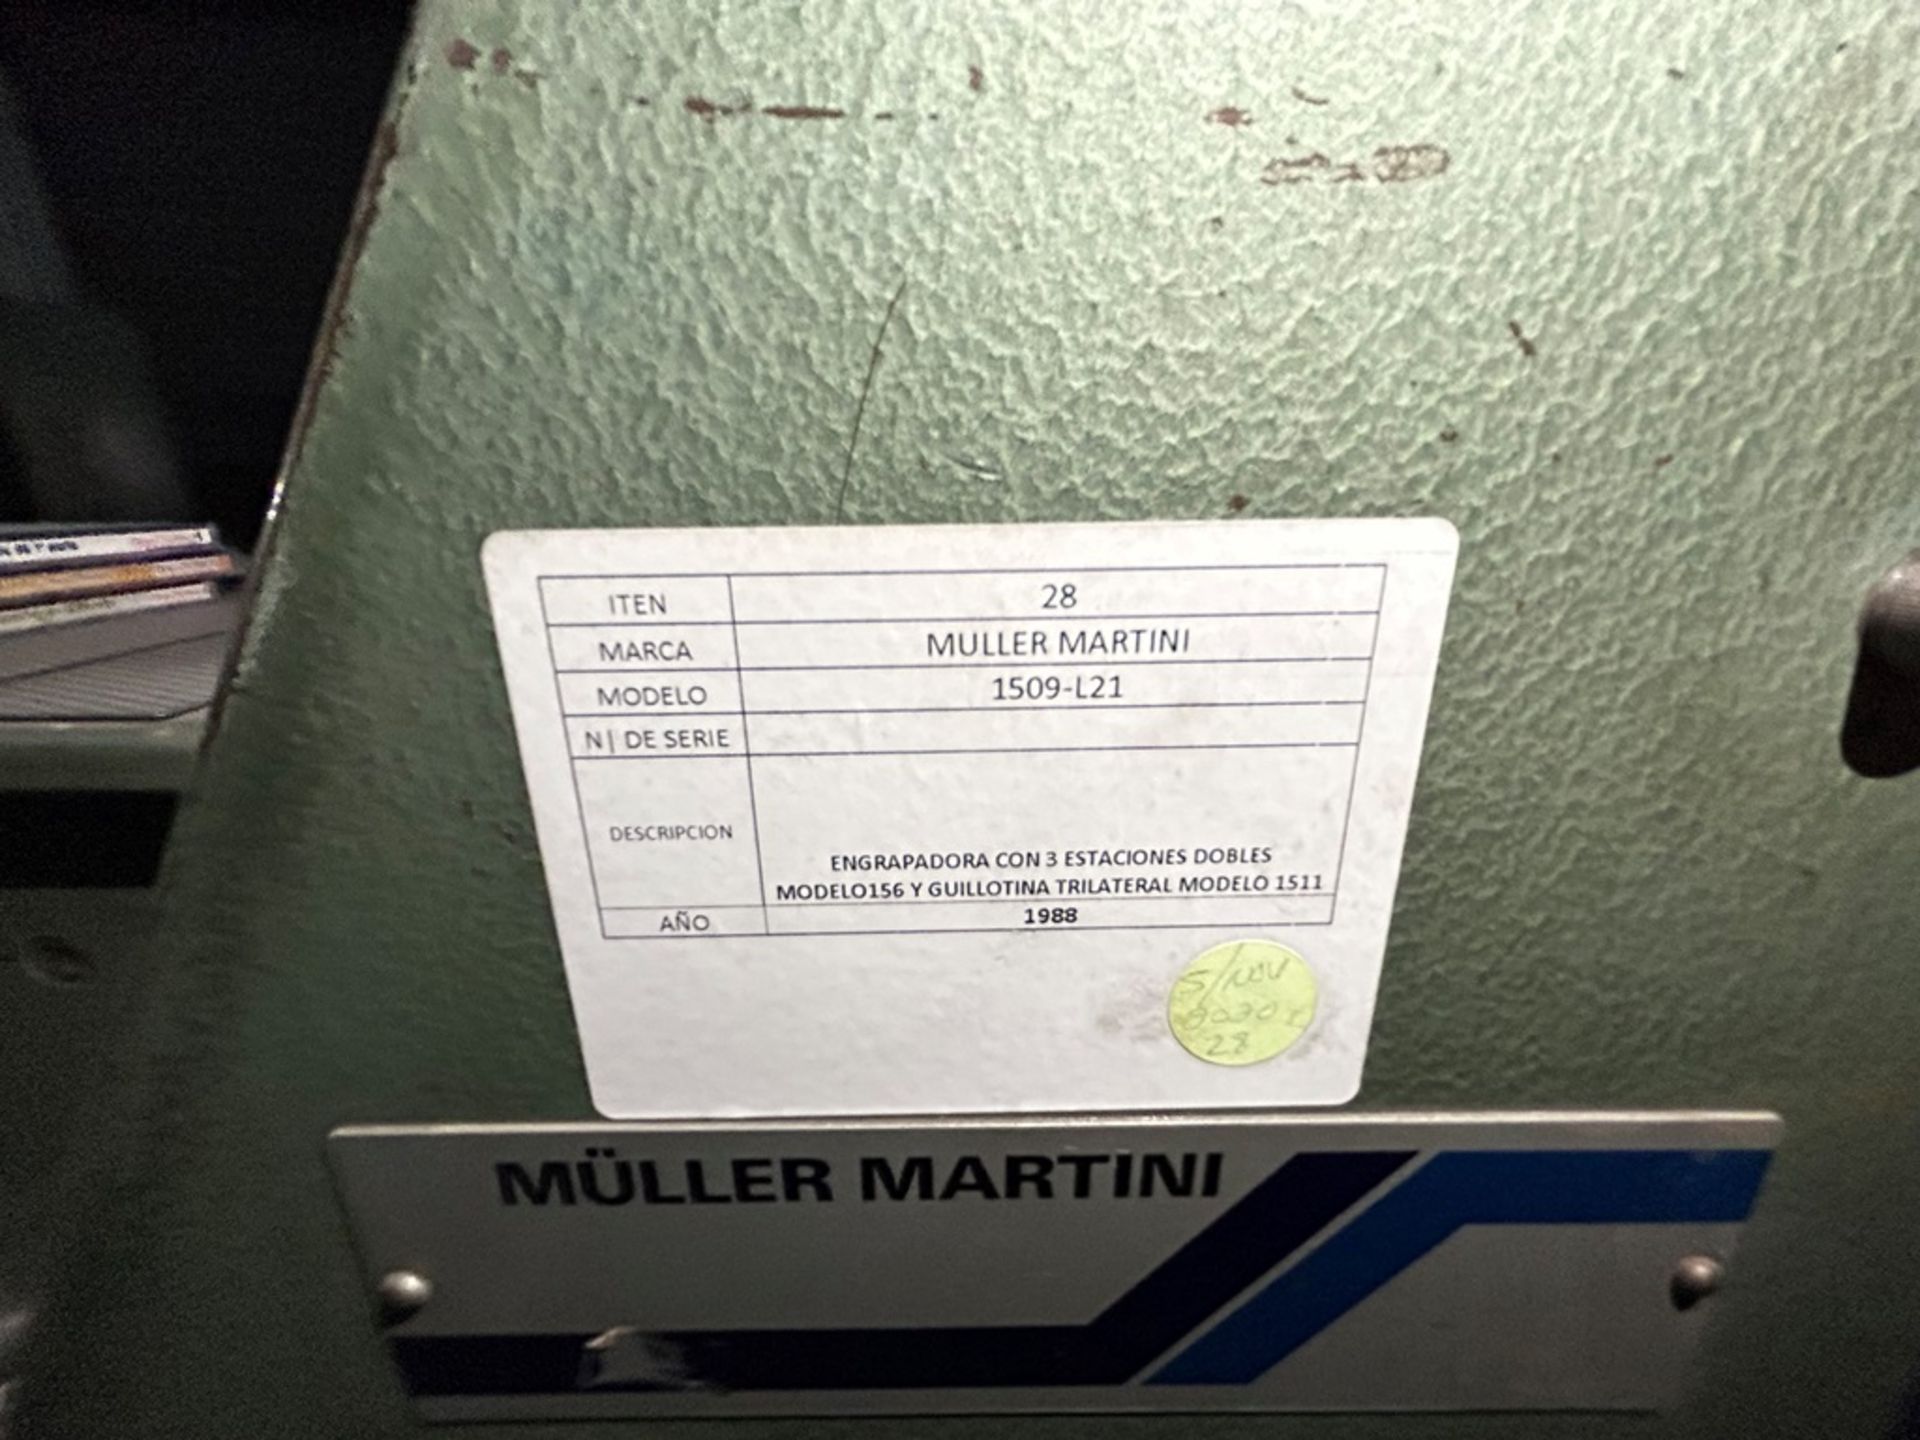 Engrapadora con 3 estaciones dobles Marca MULLER MARTINI, Modelo 1509-L21, No de serie SS, Año 1988 - Image 7 of 9